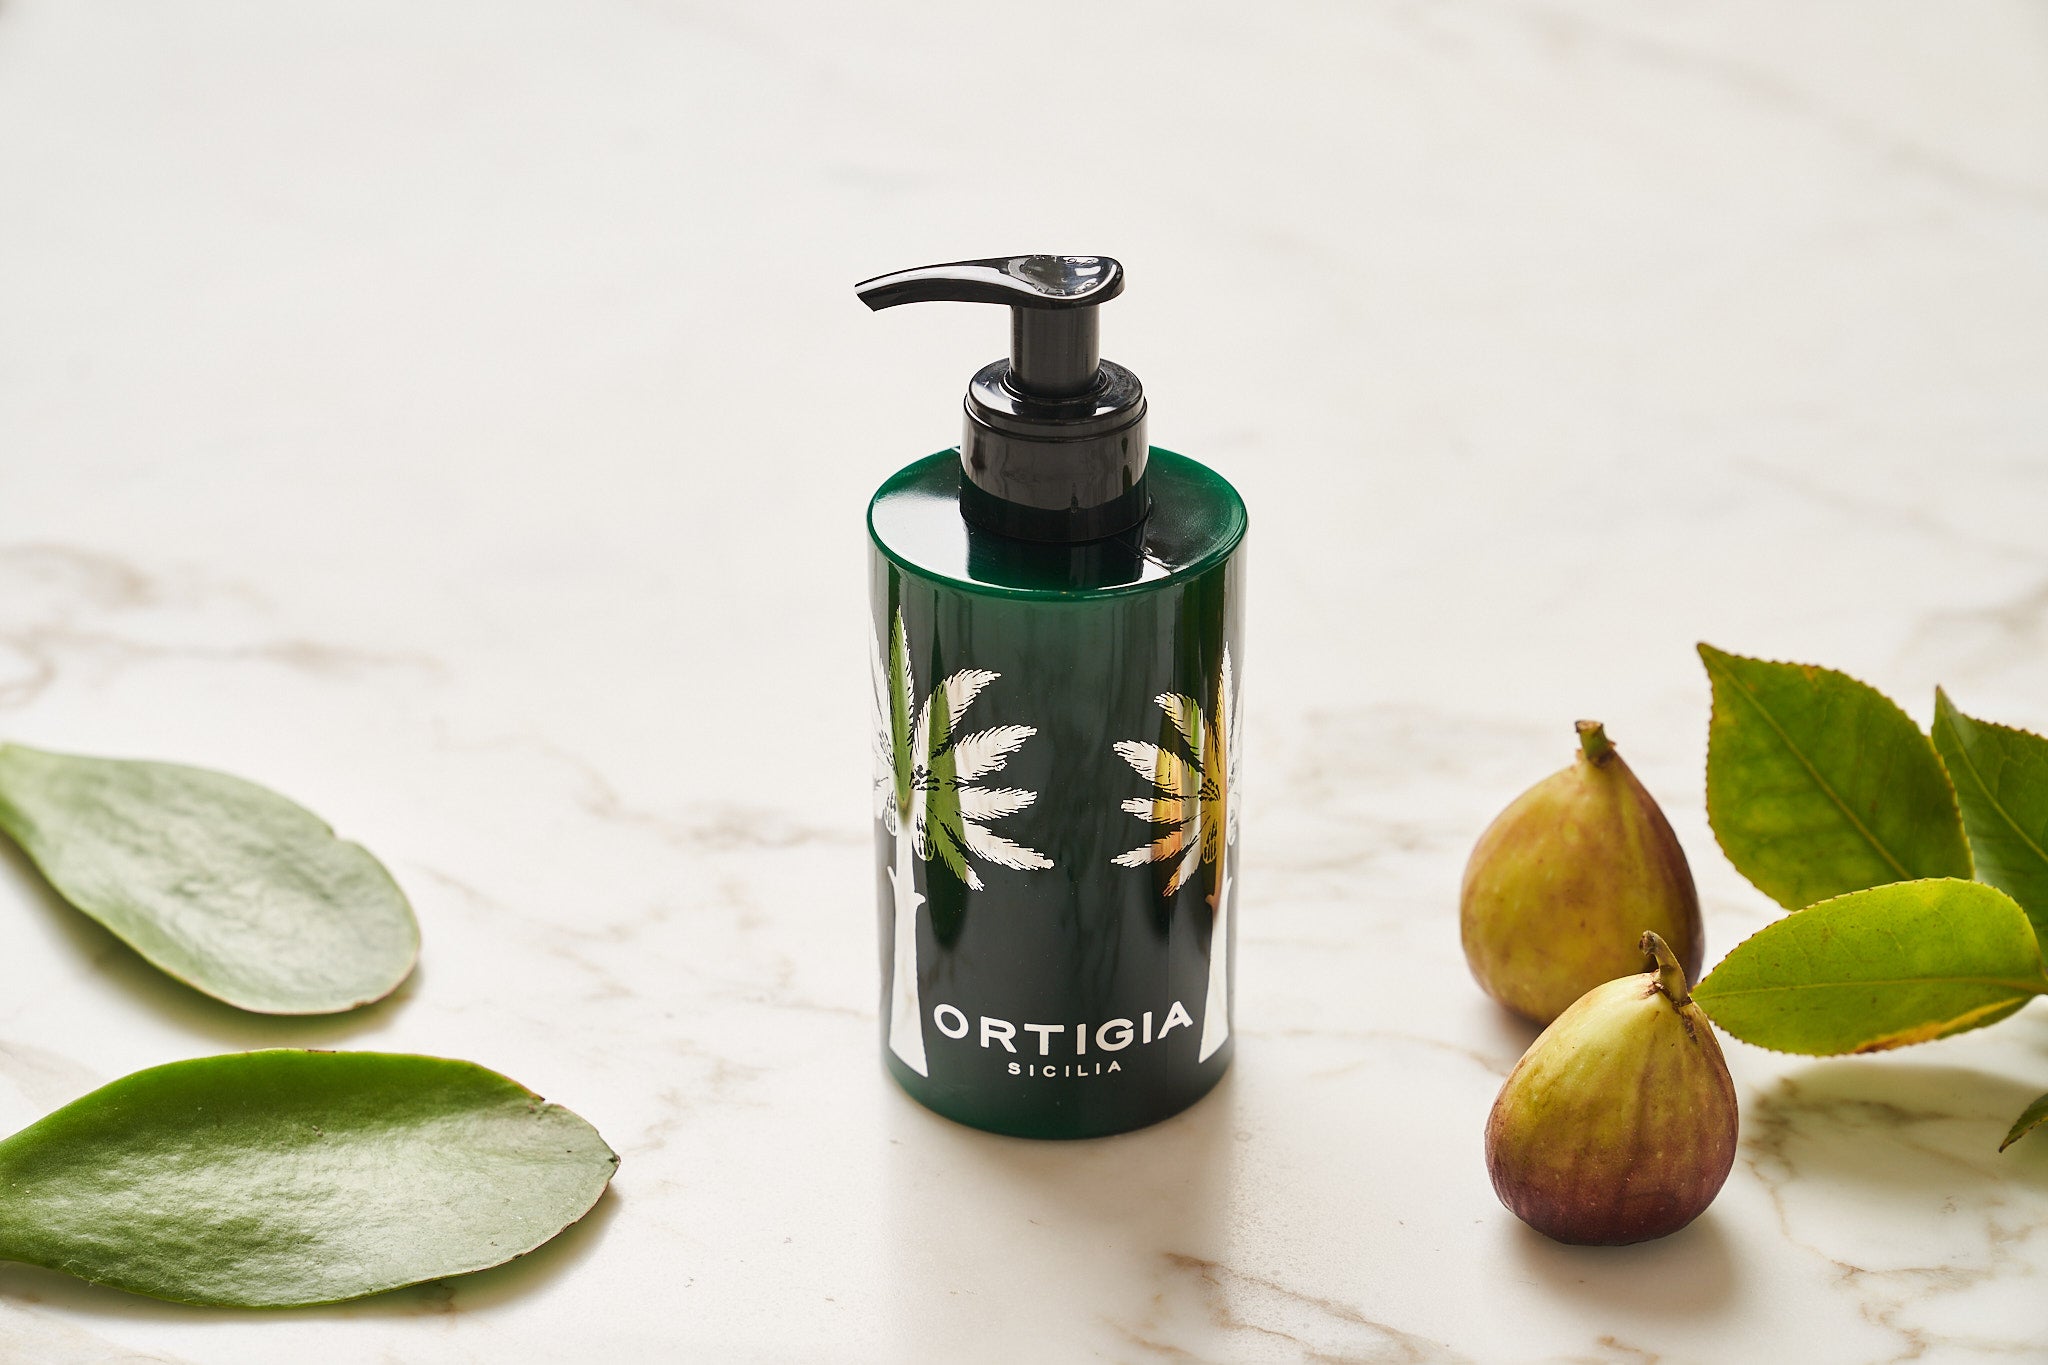 Ortigia Fico D’India Body Cream & Liquid Soap Set